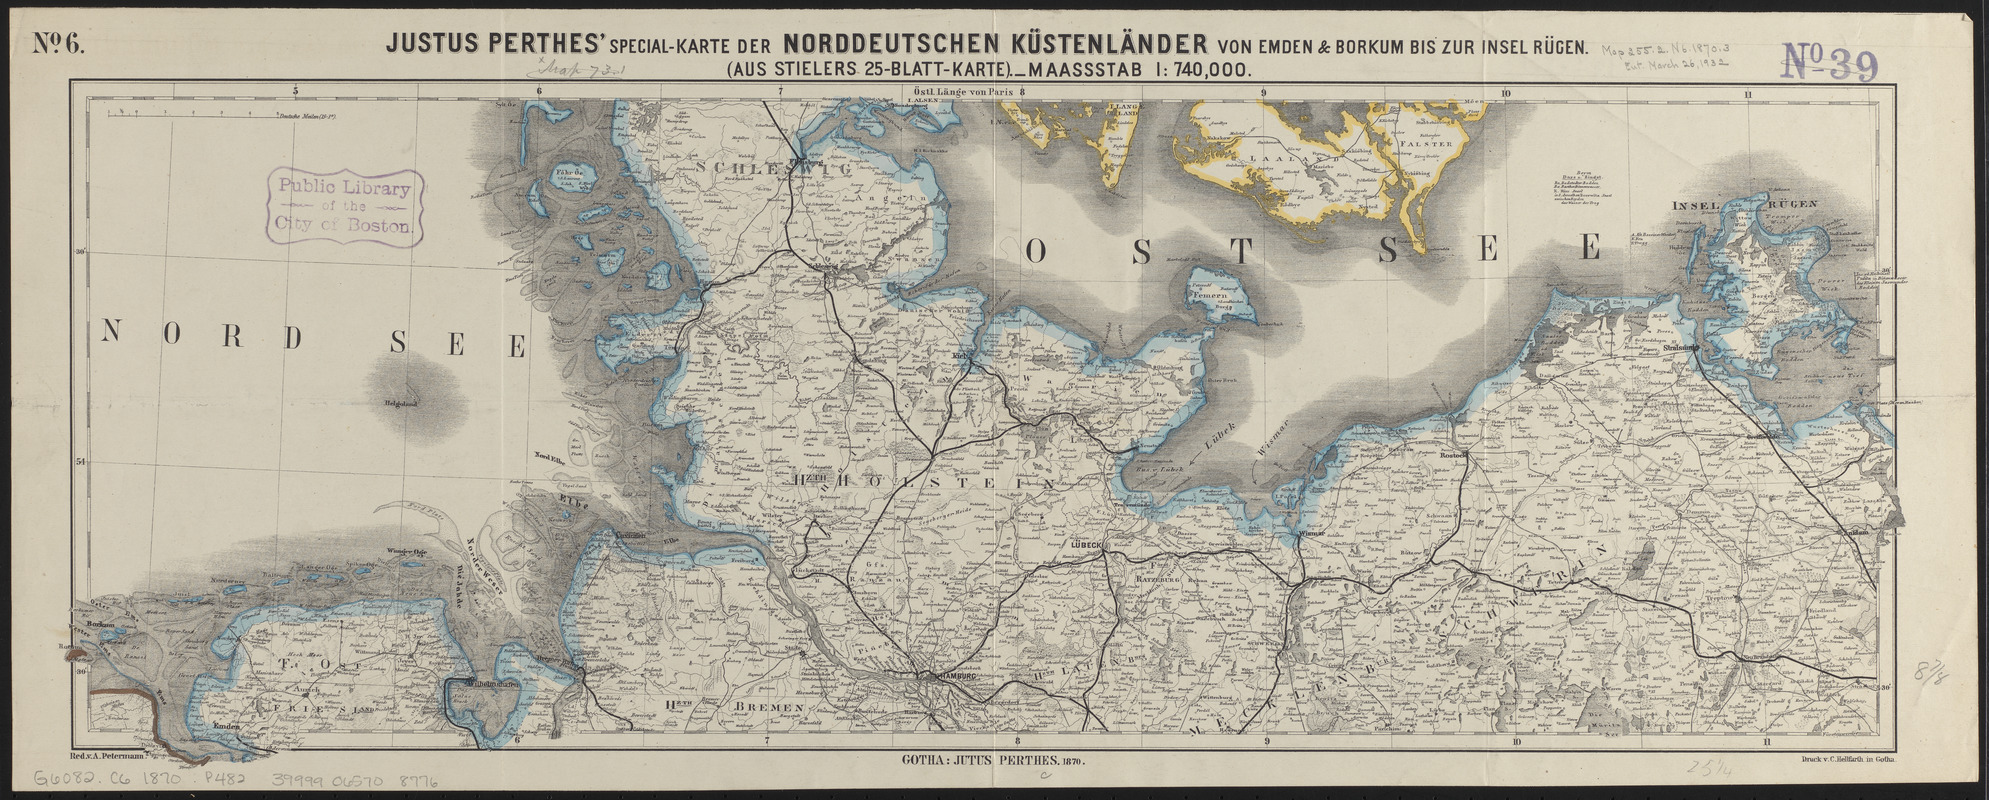 Justus Perthes' specialkarte der norddeutschen küstenländer von Emden & Borkum bis zur insel Rügen